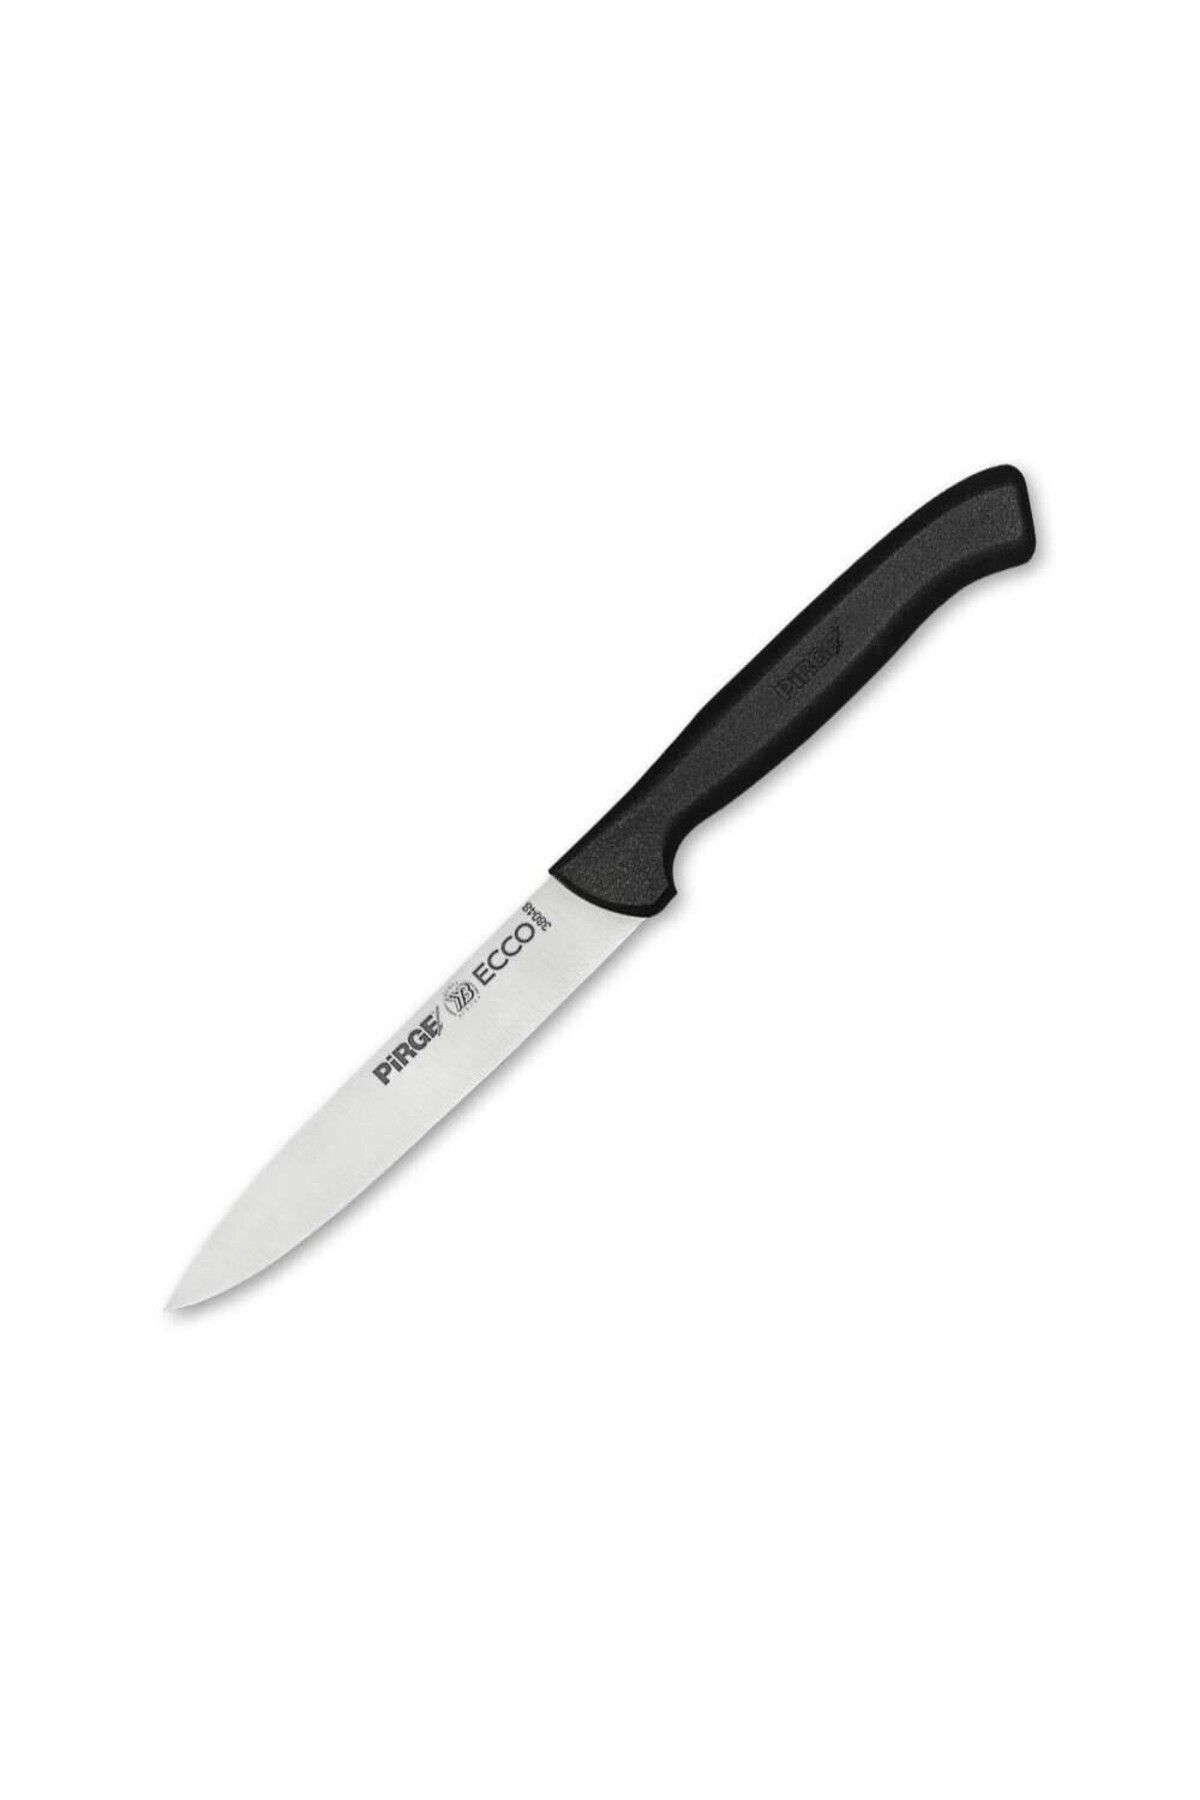 Pirge Ecco 38048 Ecco Balık Temizleme Bıçağı 12 Cm - Profesyonel